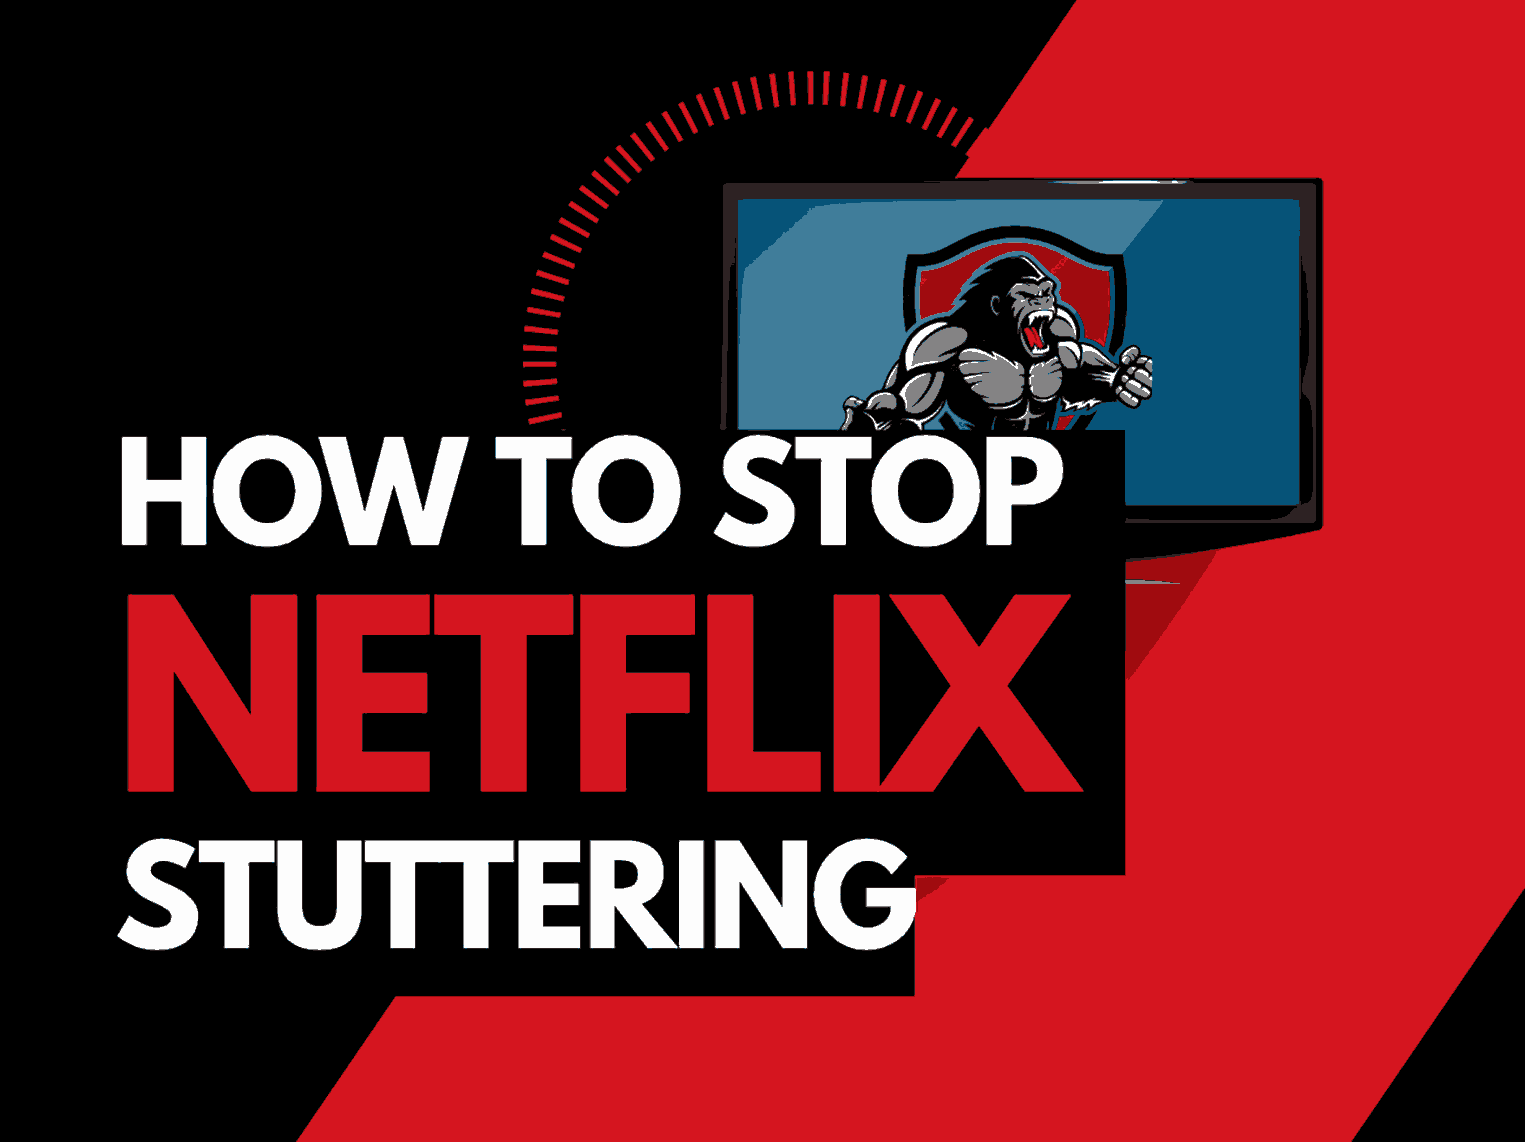 Netflix stuttering